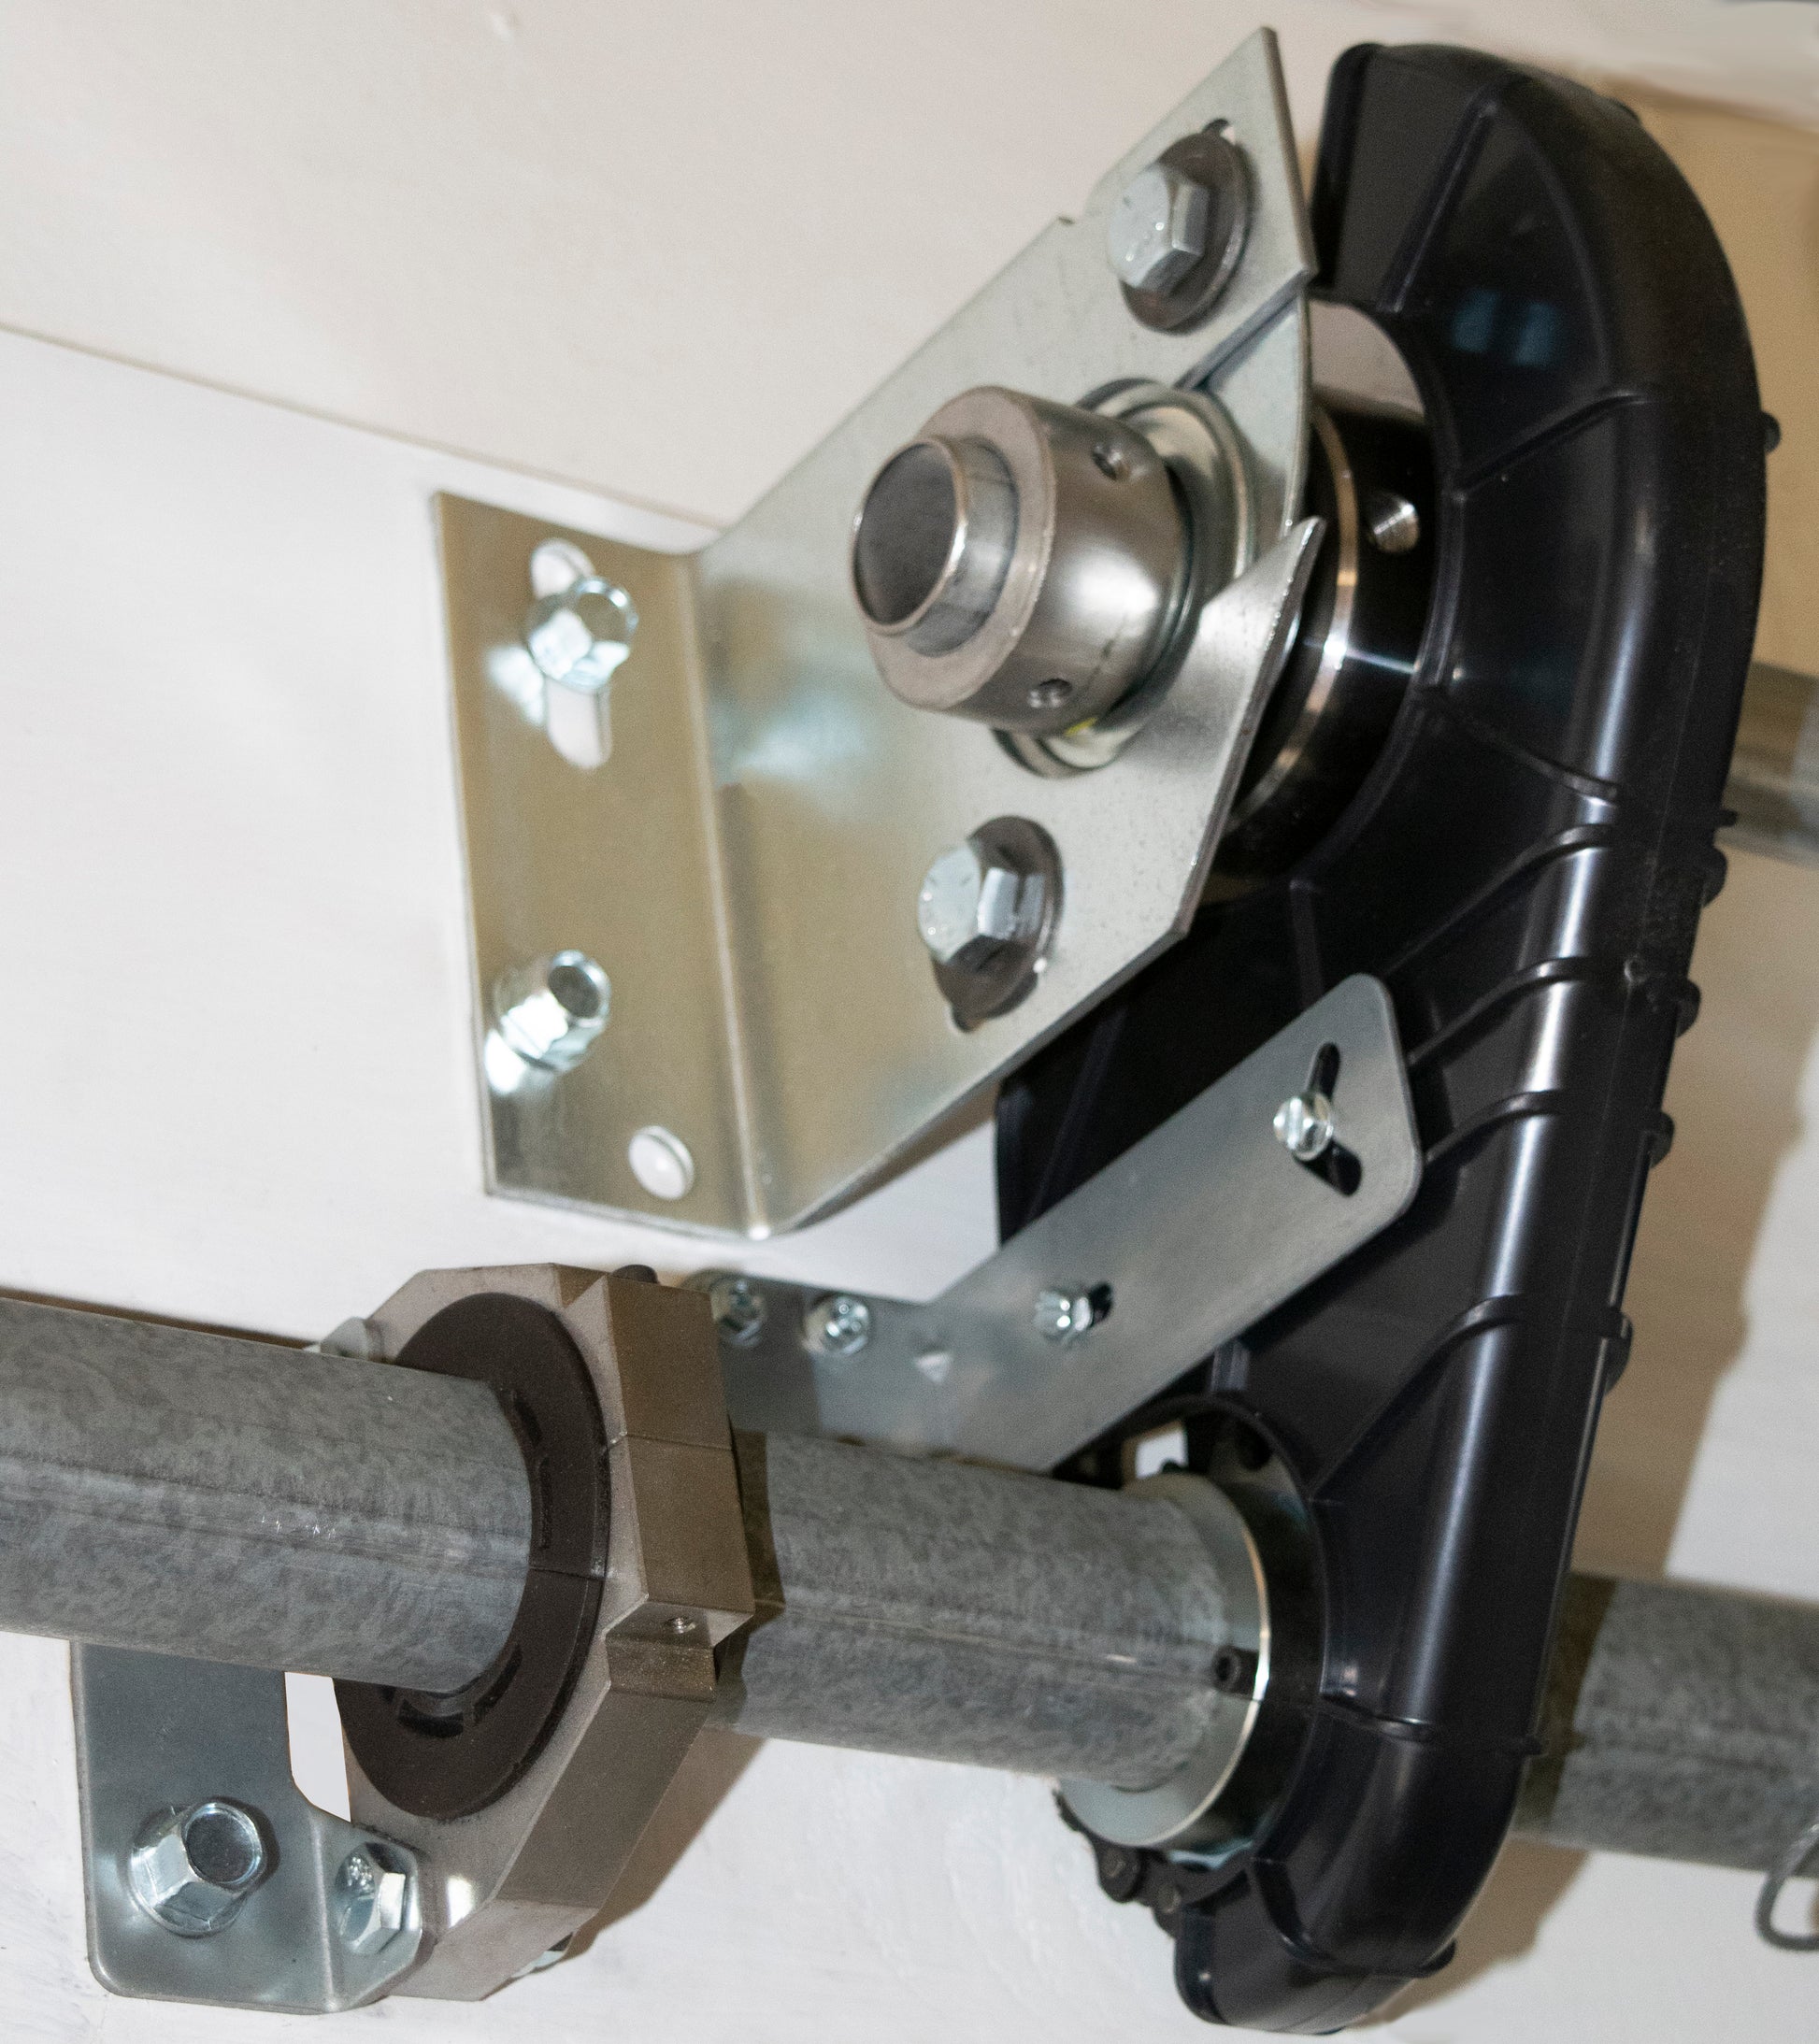 41032R TorqueMaster Adapter Kit for Genie Wall Mount Garage Door Openers installed